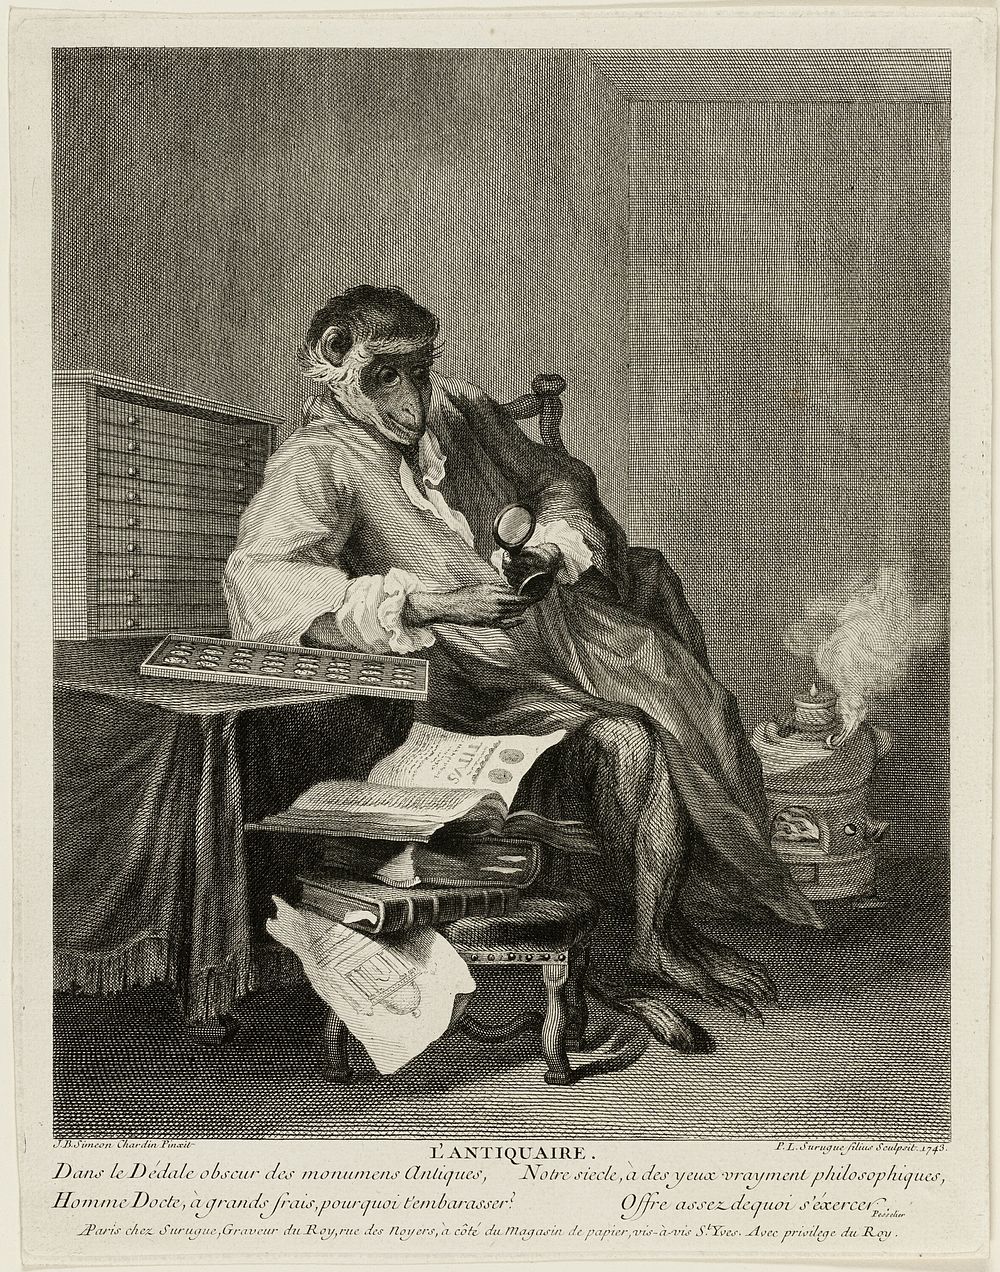 The Monkey Antiquarian by Pierre Louis de Surugue